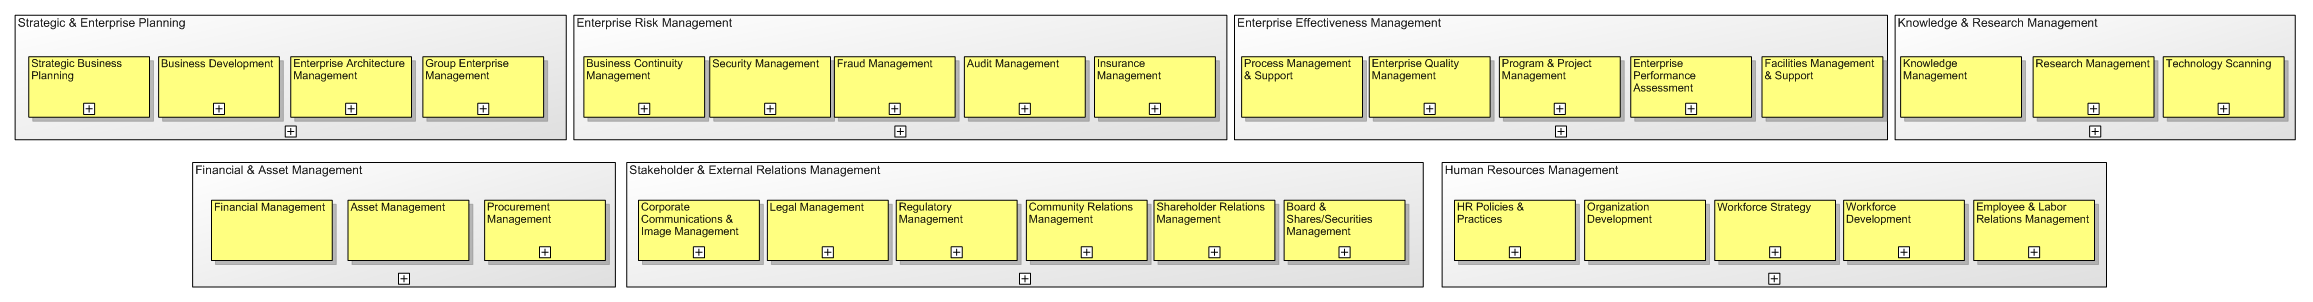 eTOM Enterprise Management